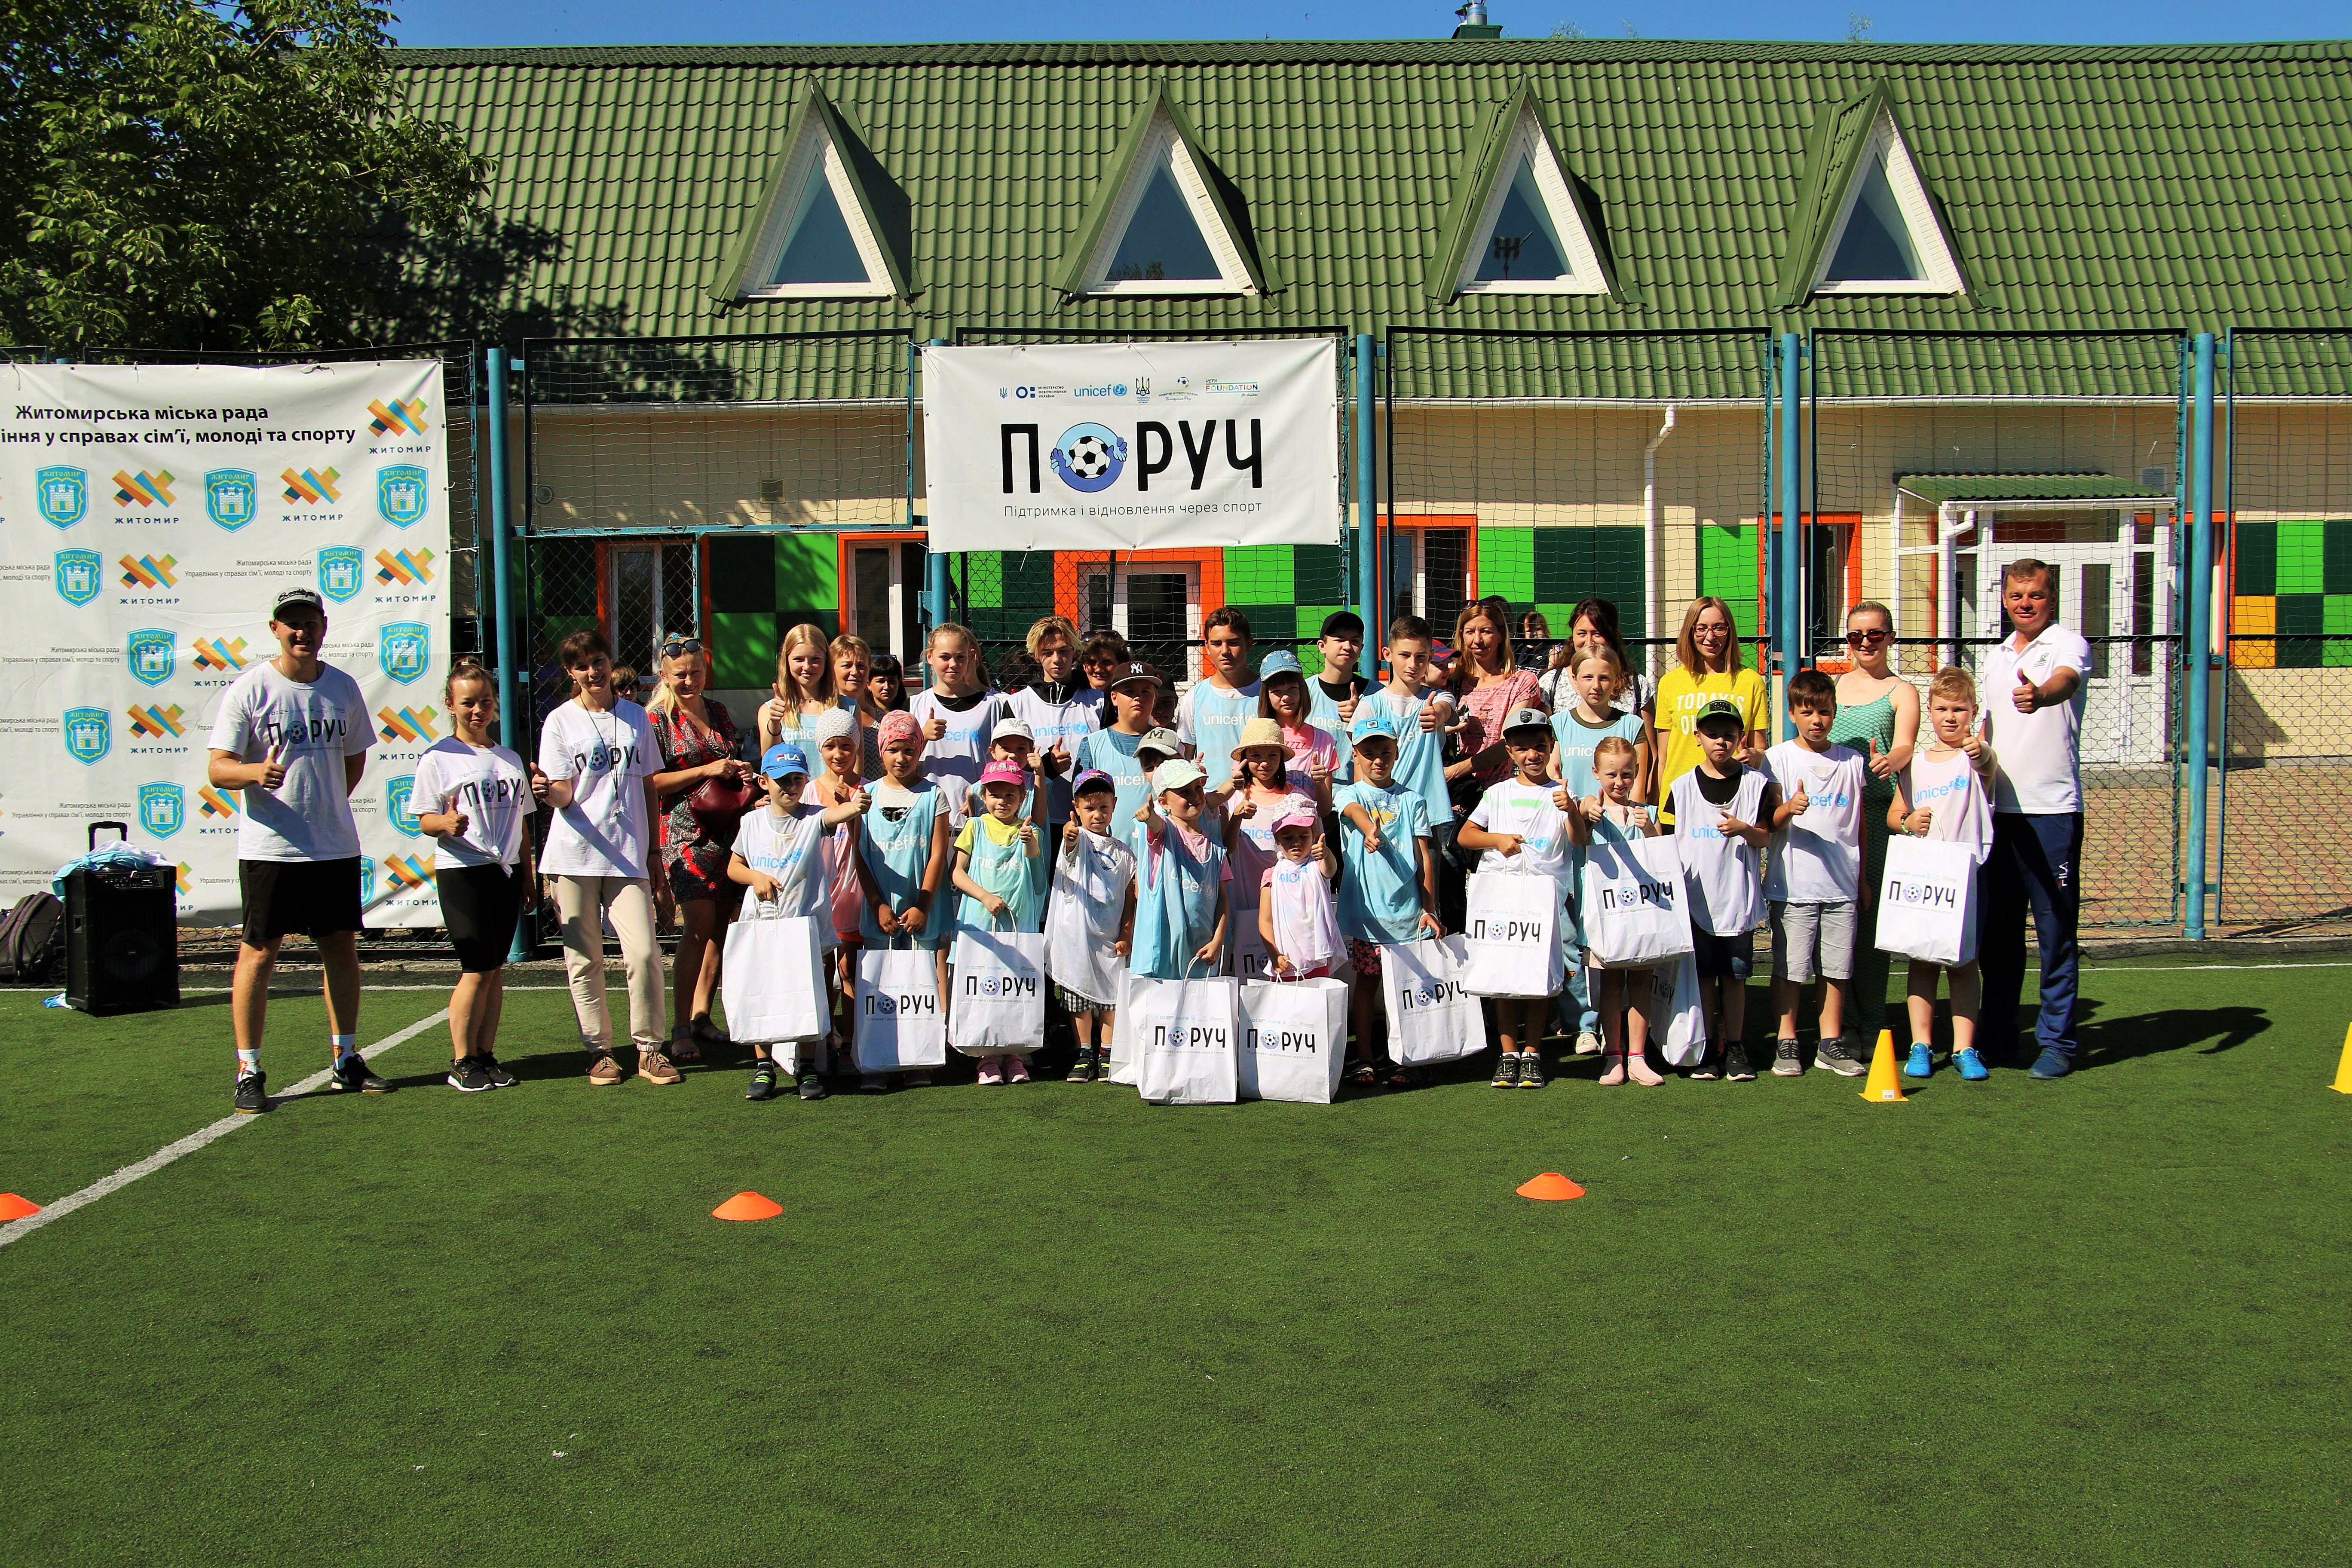 З 16 червня в Житомирі стартував проєкт психологічної підтримки для дітей та молоді через заняття спортом «ПОРУЧ»